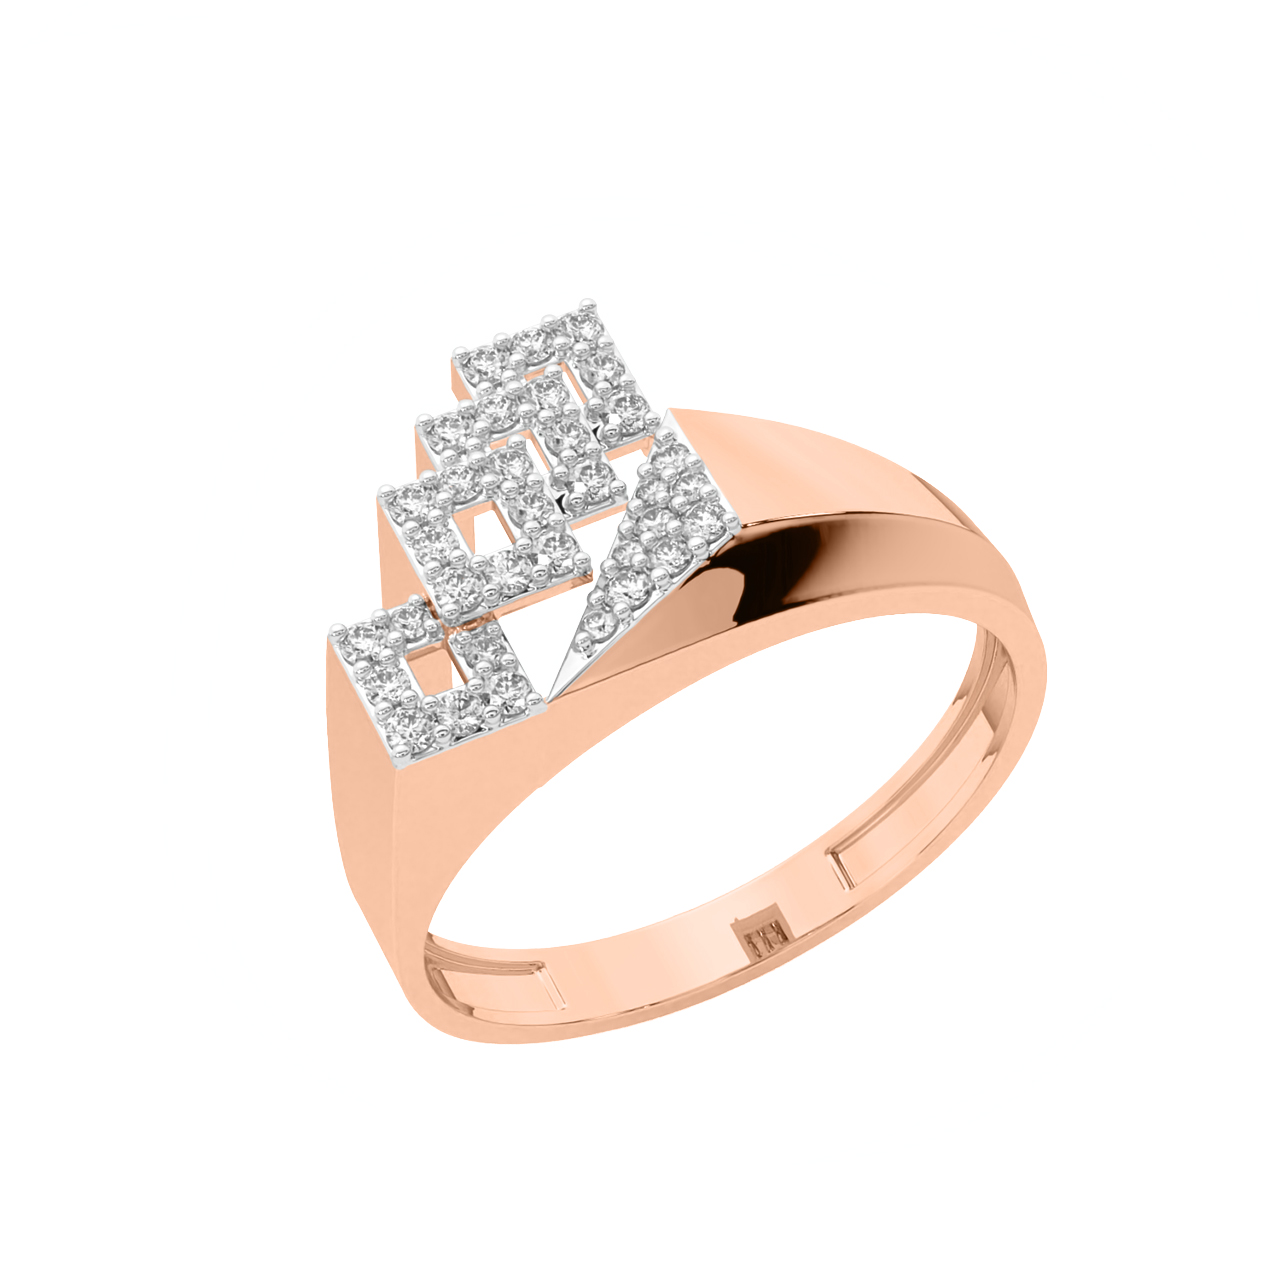 Sabah Round Diamond Engagement Ring